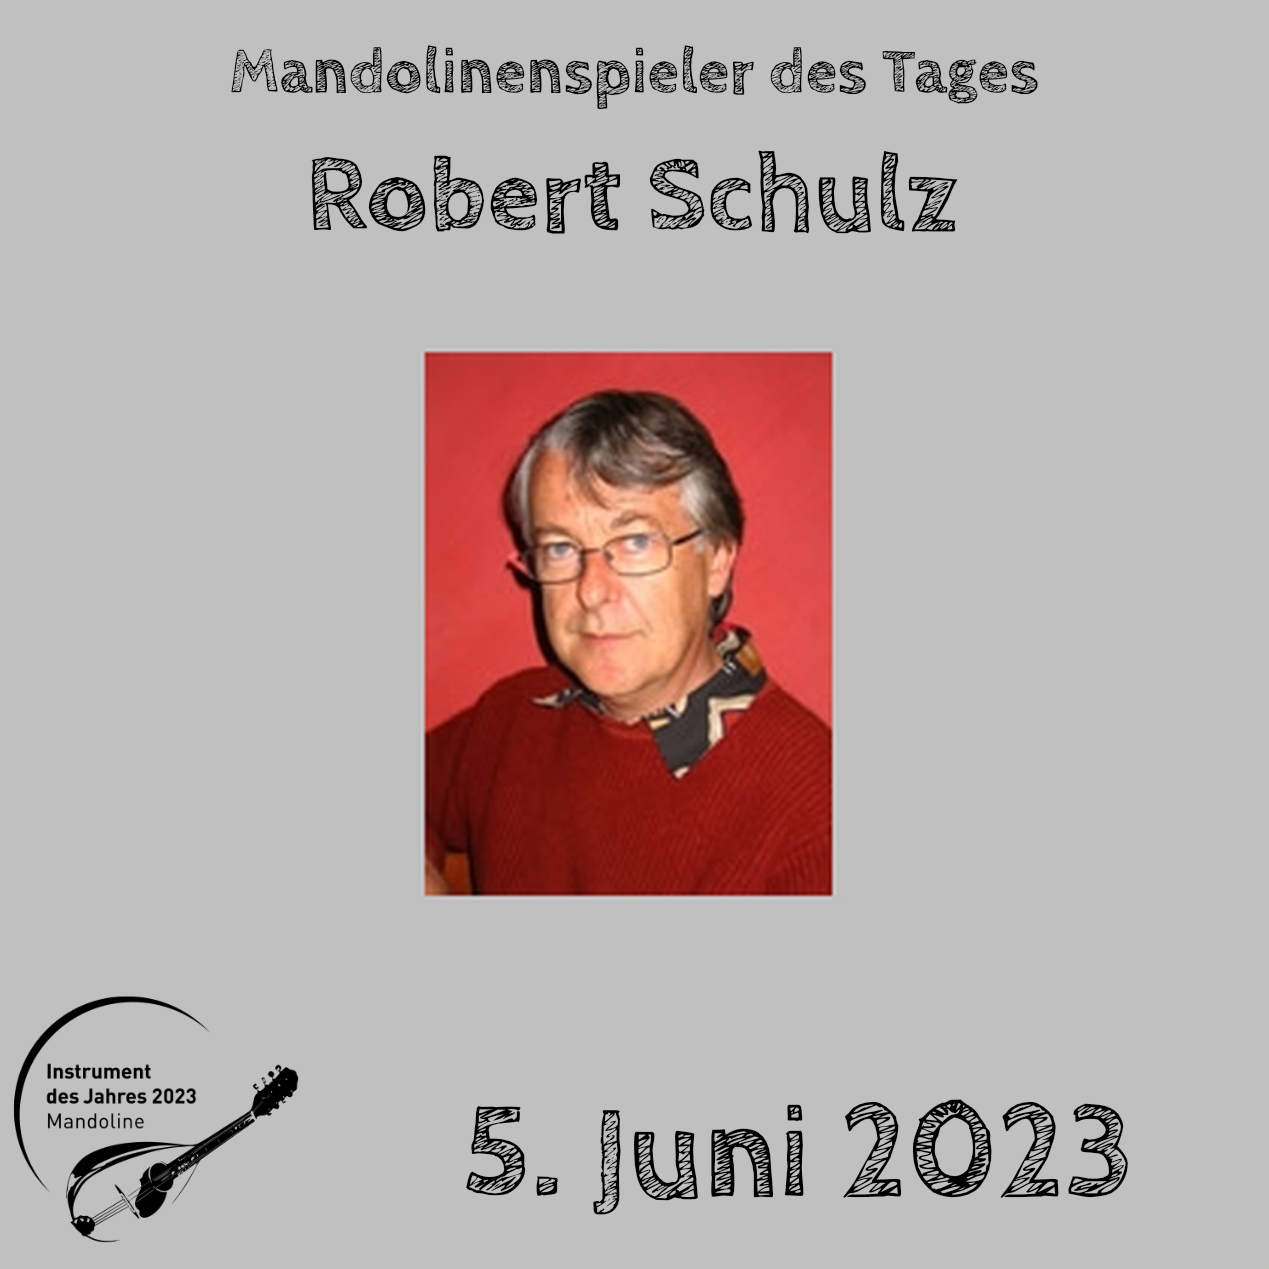 Robert Schulz Mandoline Instrument des Jahres 2023 Mandolinenspieler Mandolinenspielerin des Tages